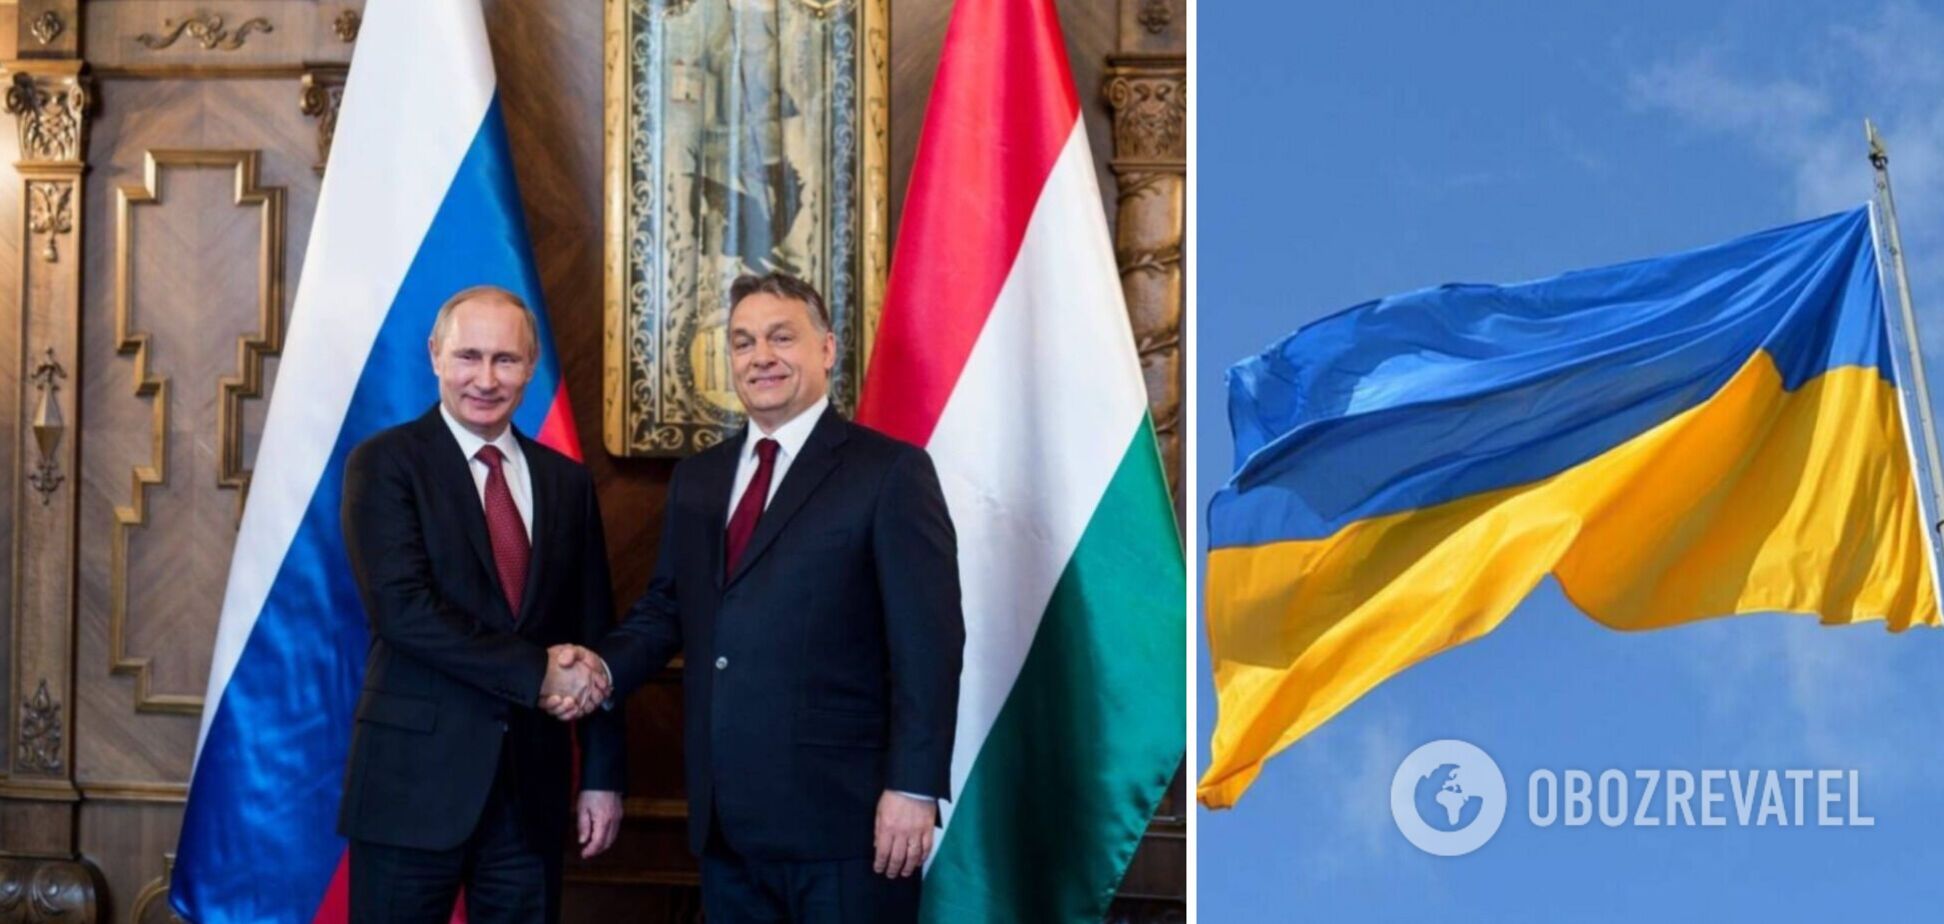 Орбан заявил, что Венгрия стремится ускорить членство Украины в ЕС, но сохранить связи с РФ